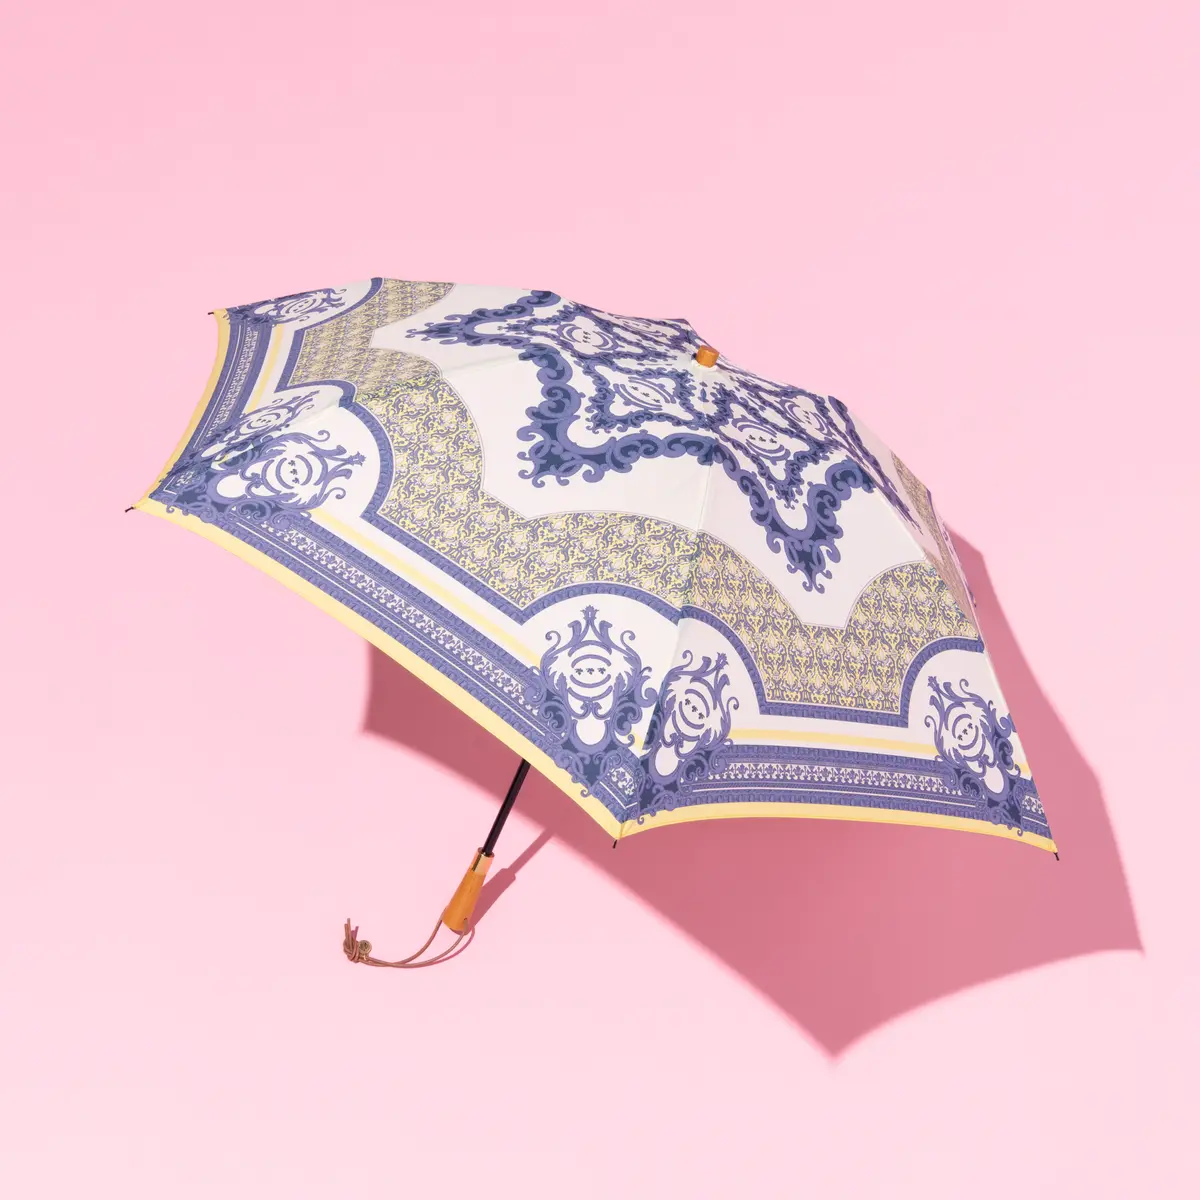 マニプリの日傘の撮りおろし画像